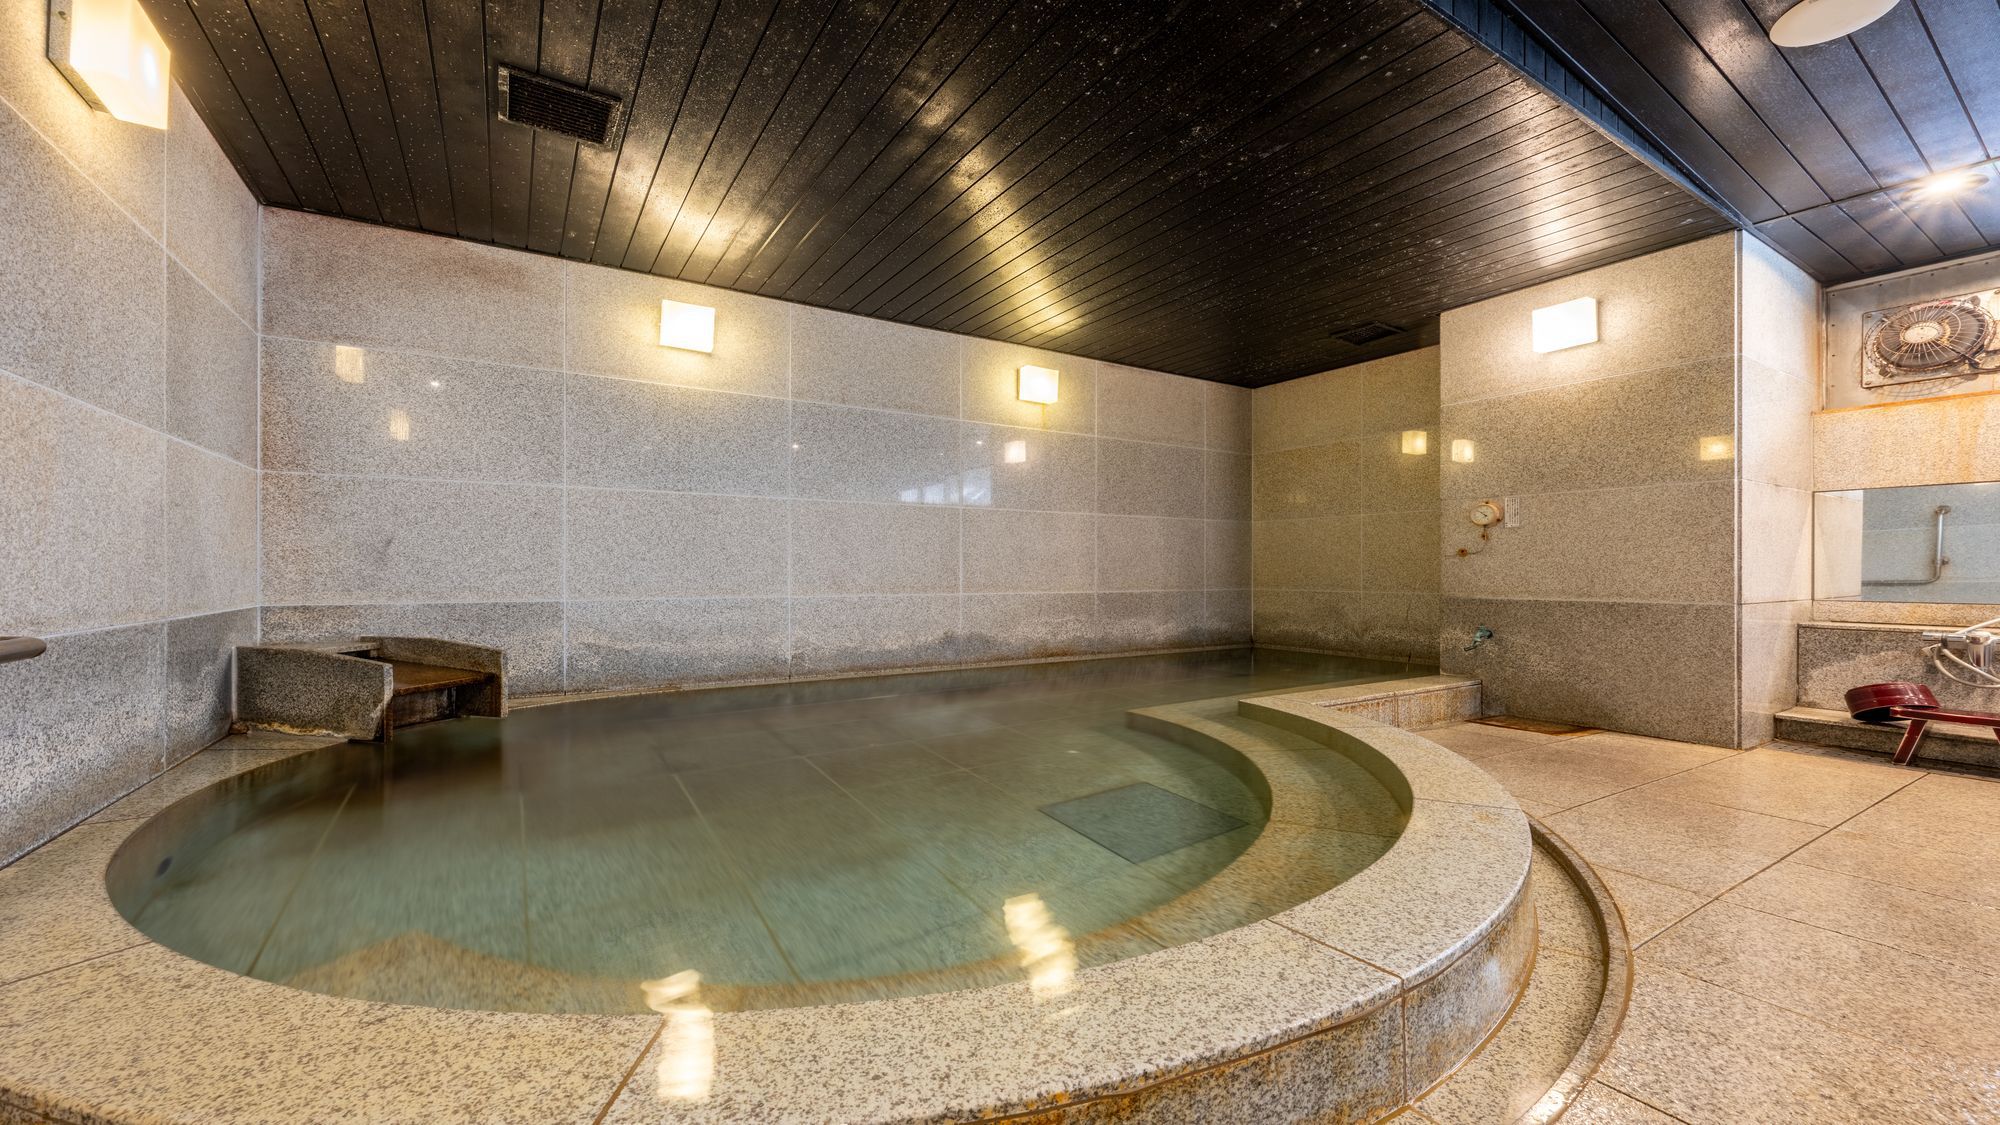 【地下1階大浴場】 源泉１００％かけ流し温泉を純粋にご堪能ください